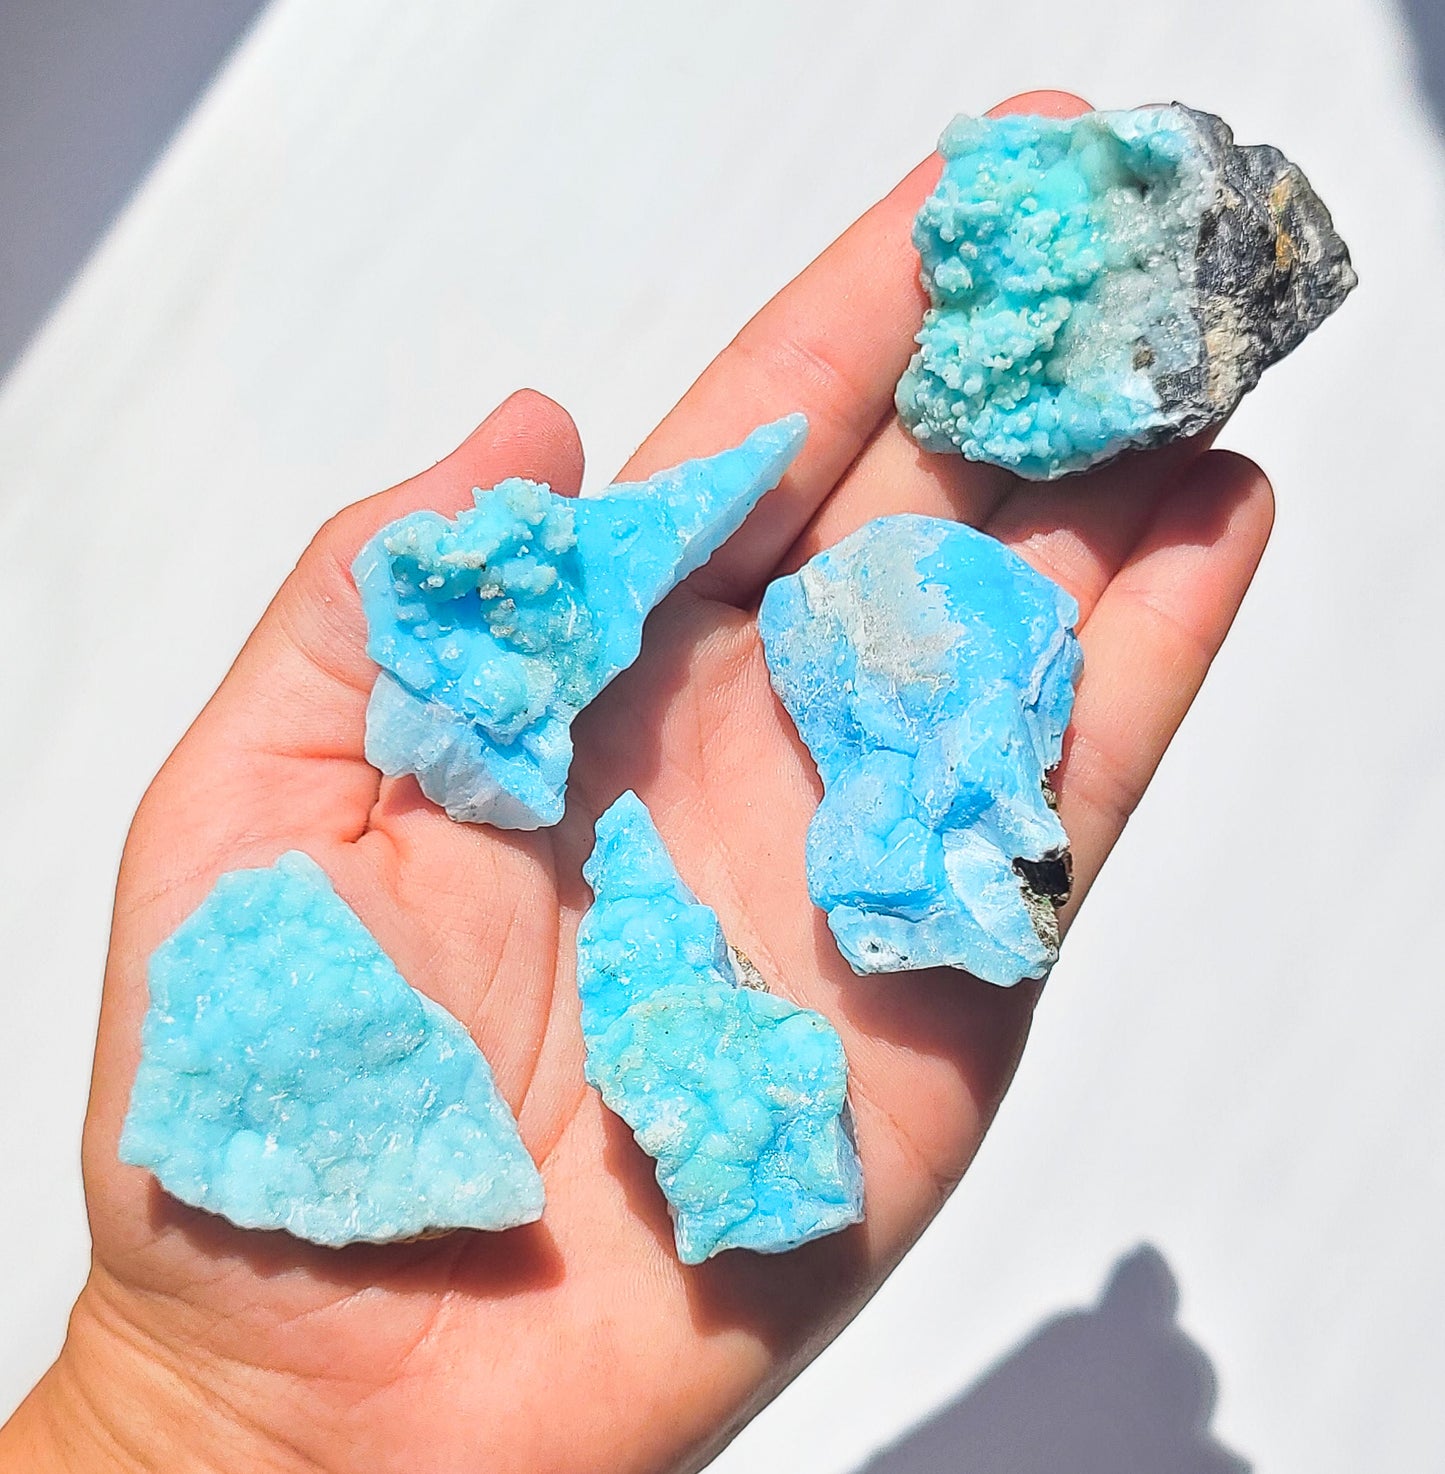 Blue Aragonite specimen - Medium